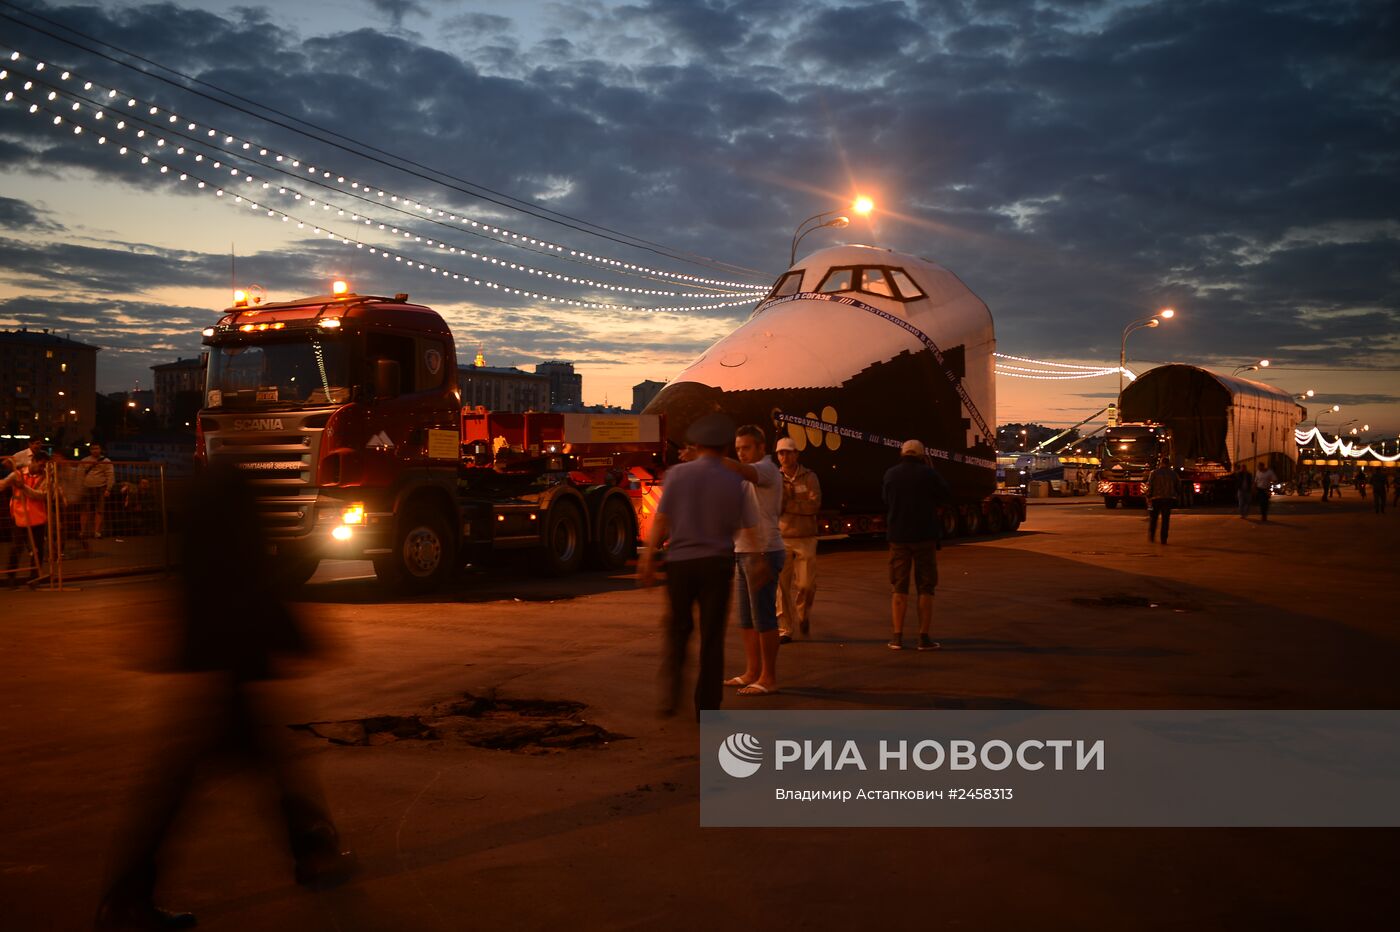 Транспортировка макета космического корабля "Буран" на ВДНХ